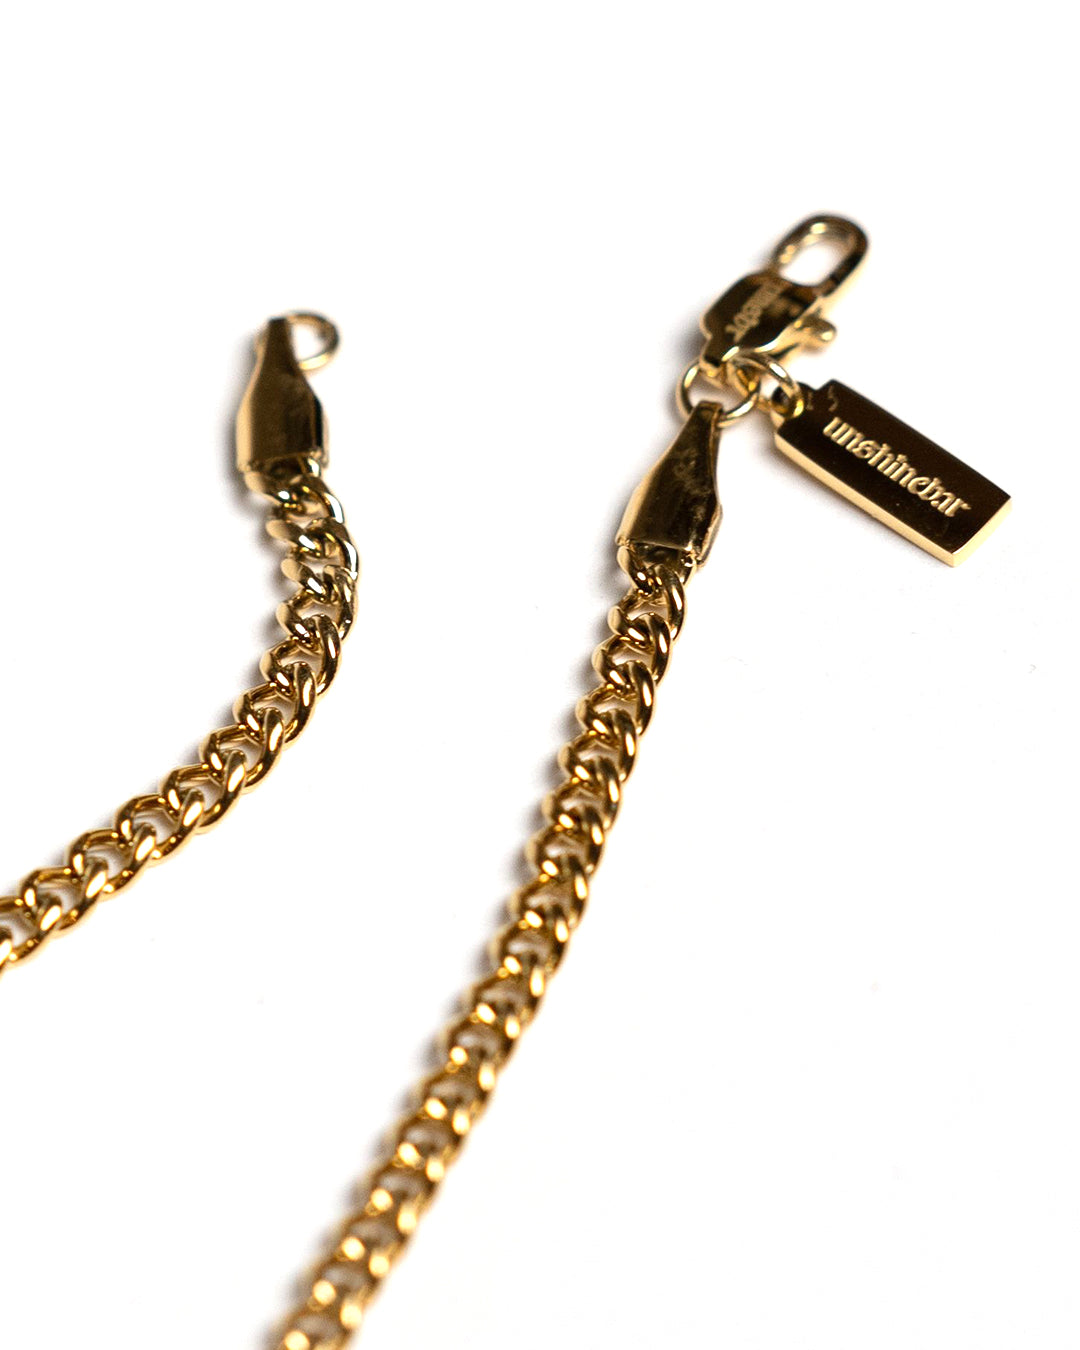 Curb Chain 3.5mm (Gold)